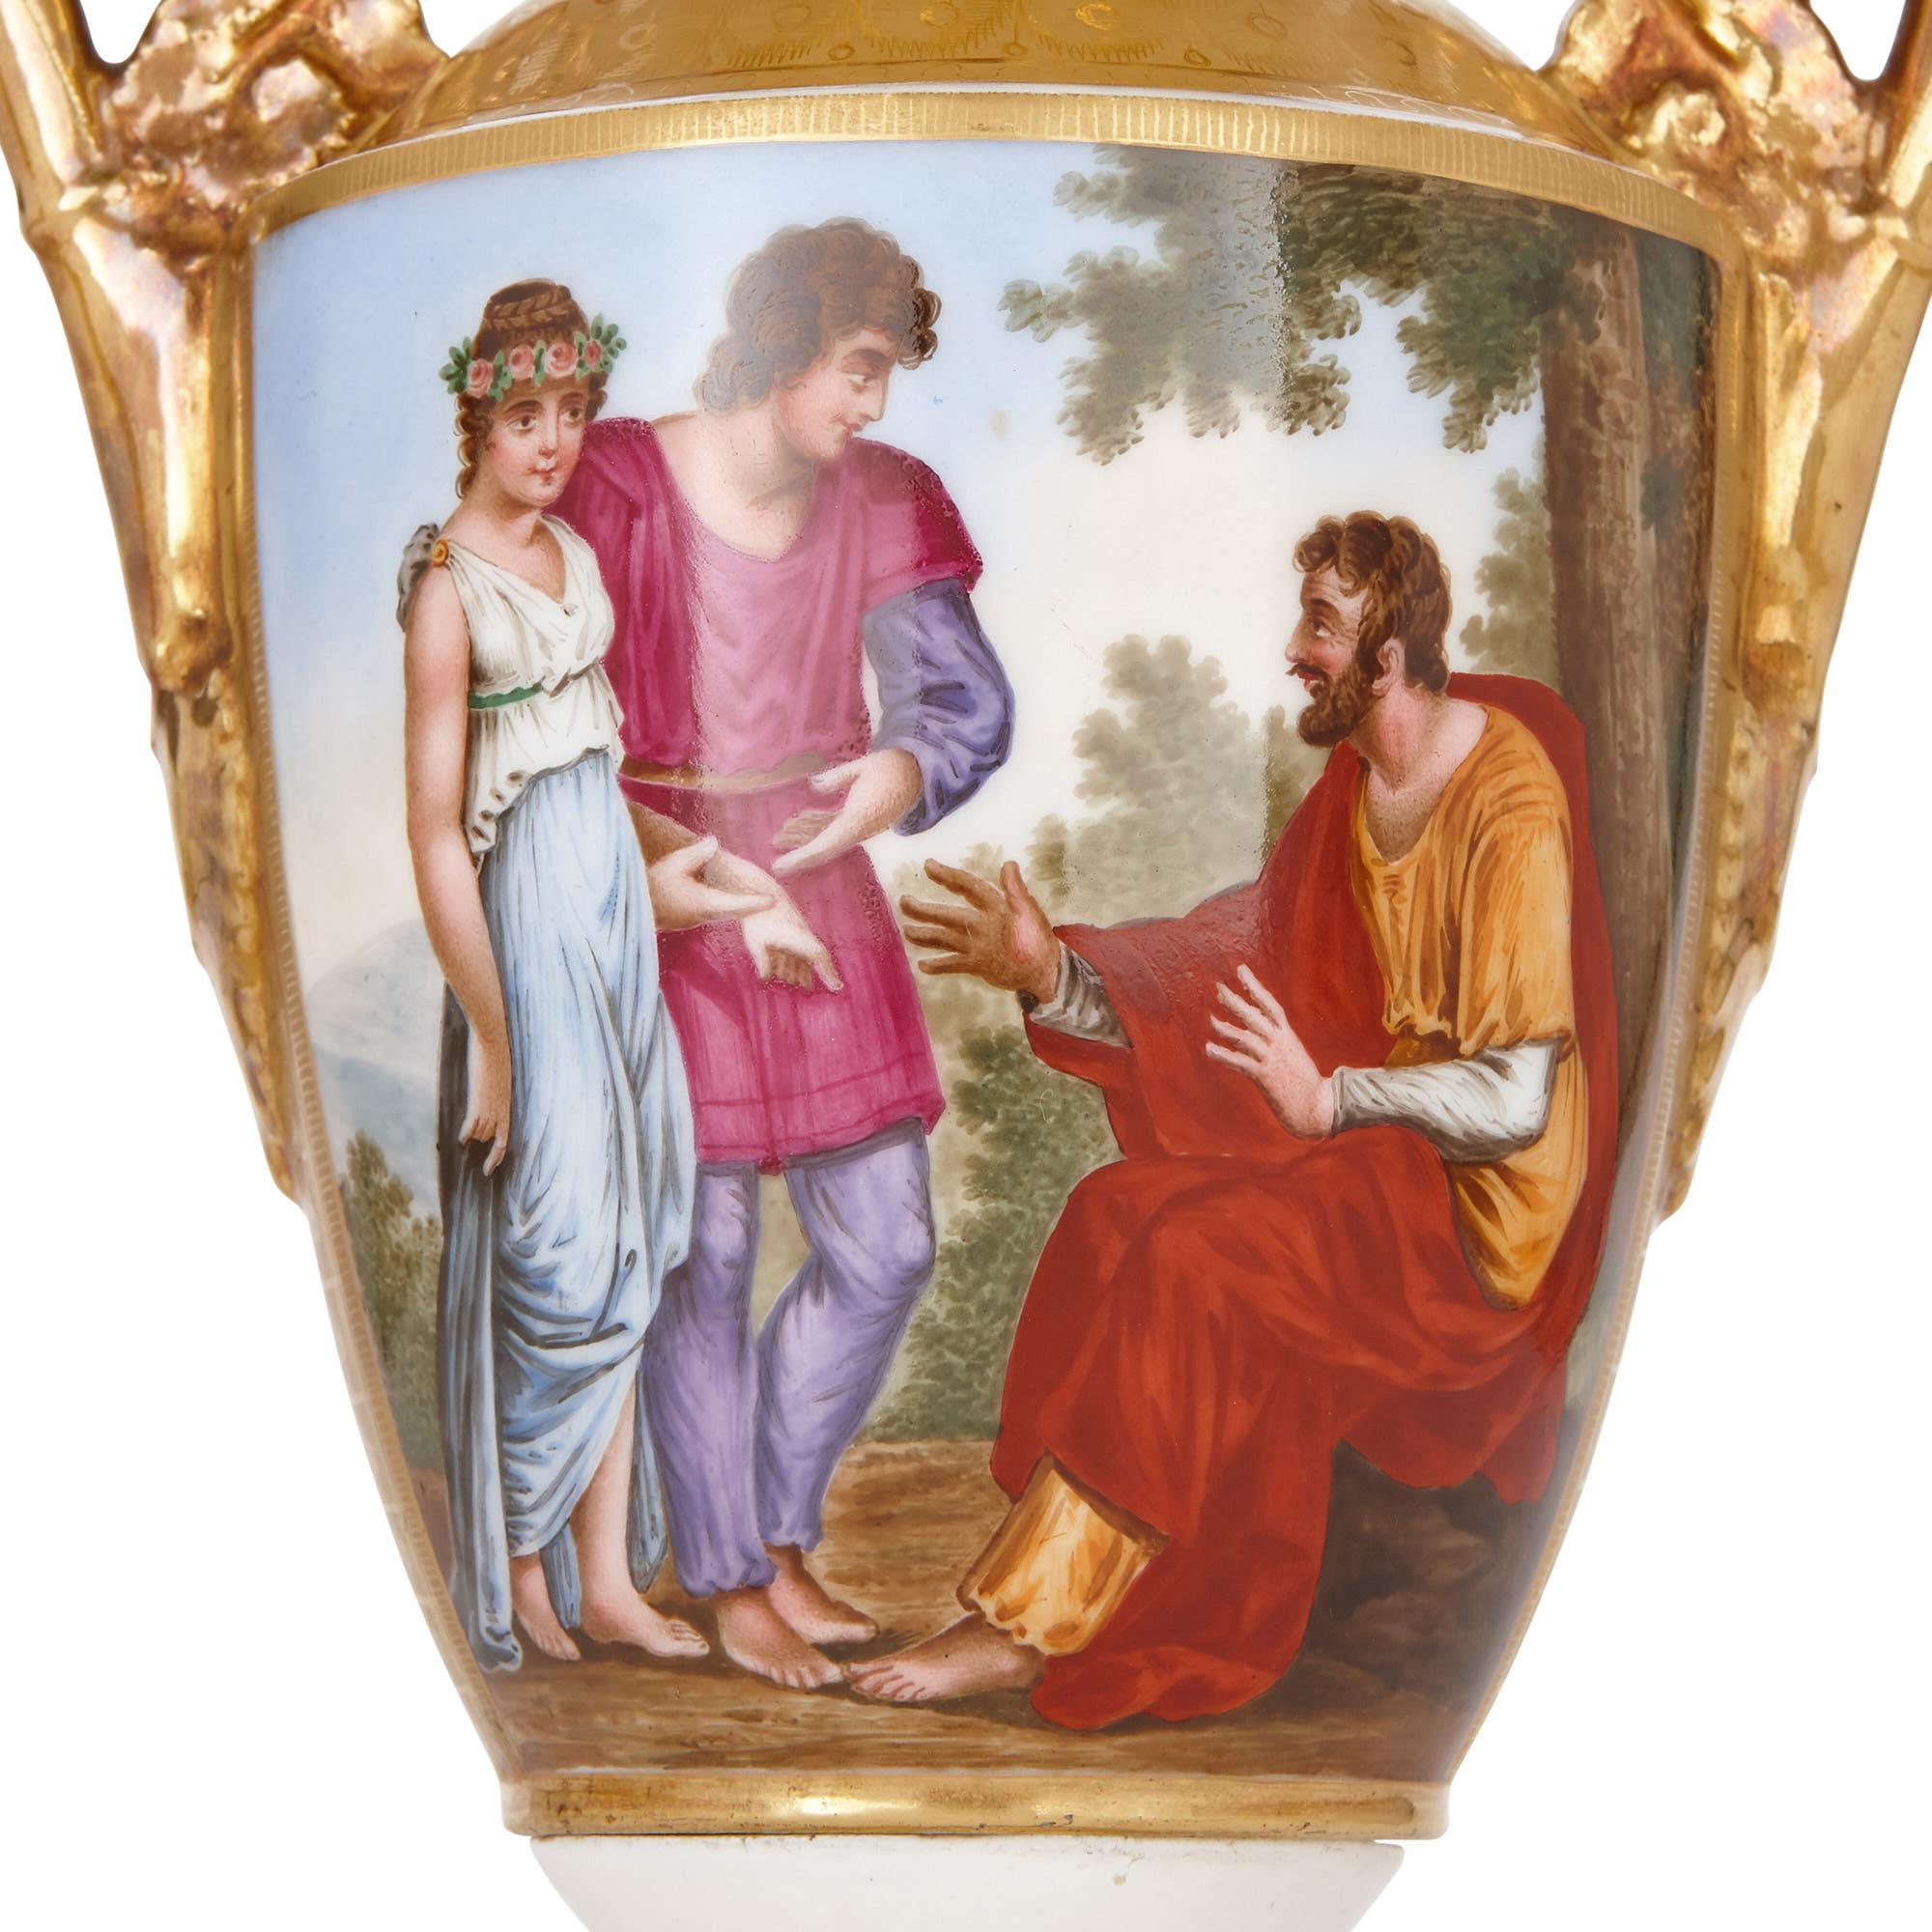 Ces élégants vases en porcelaine ont été fabriqués en France entre 1825 et 1835. Ils sont conçus dans le style de la Renaissance, en forme de vases amphores grecs, et peints de scènes d'inspiration classique. 

Les vases en porcelaine blanche ont